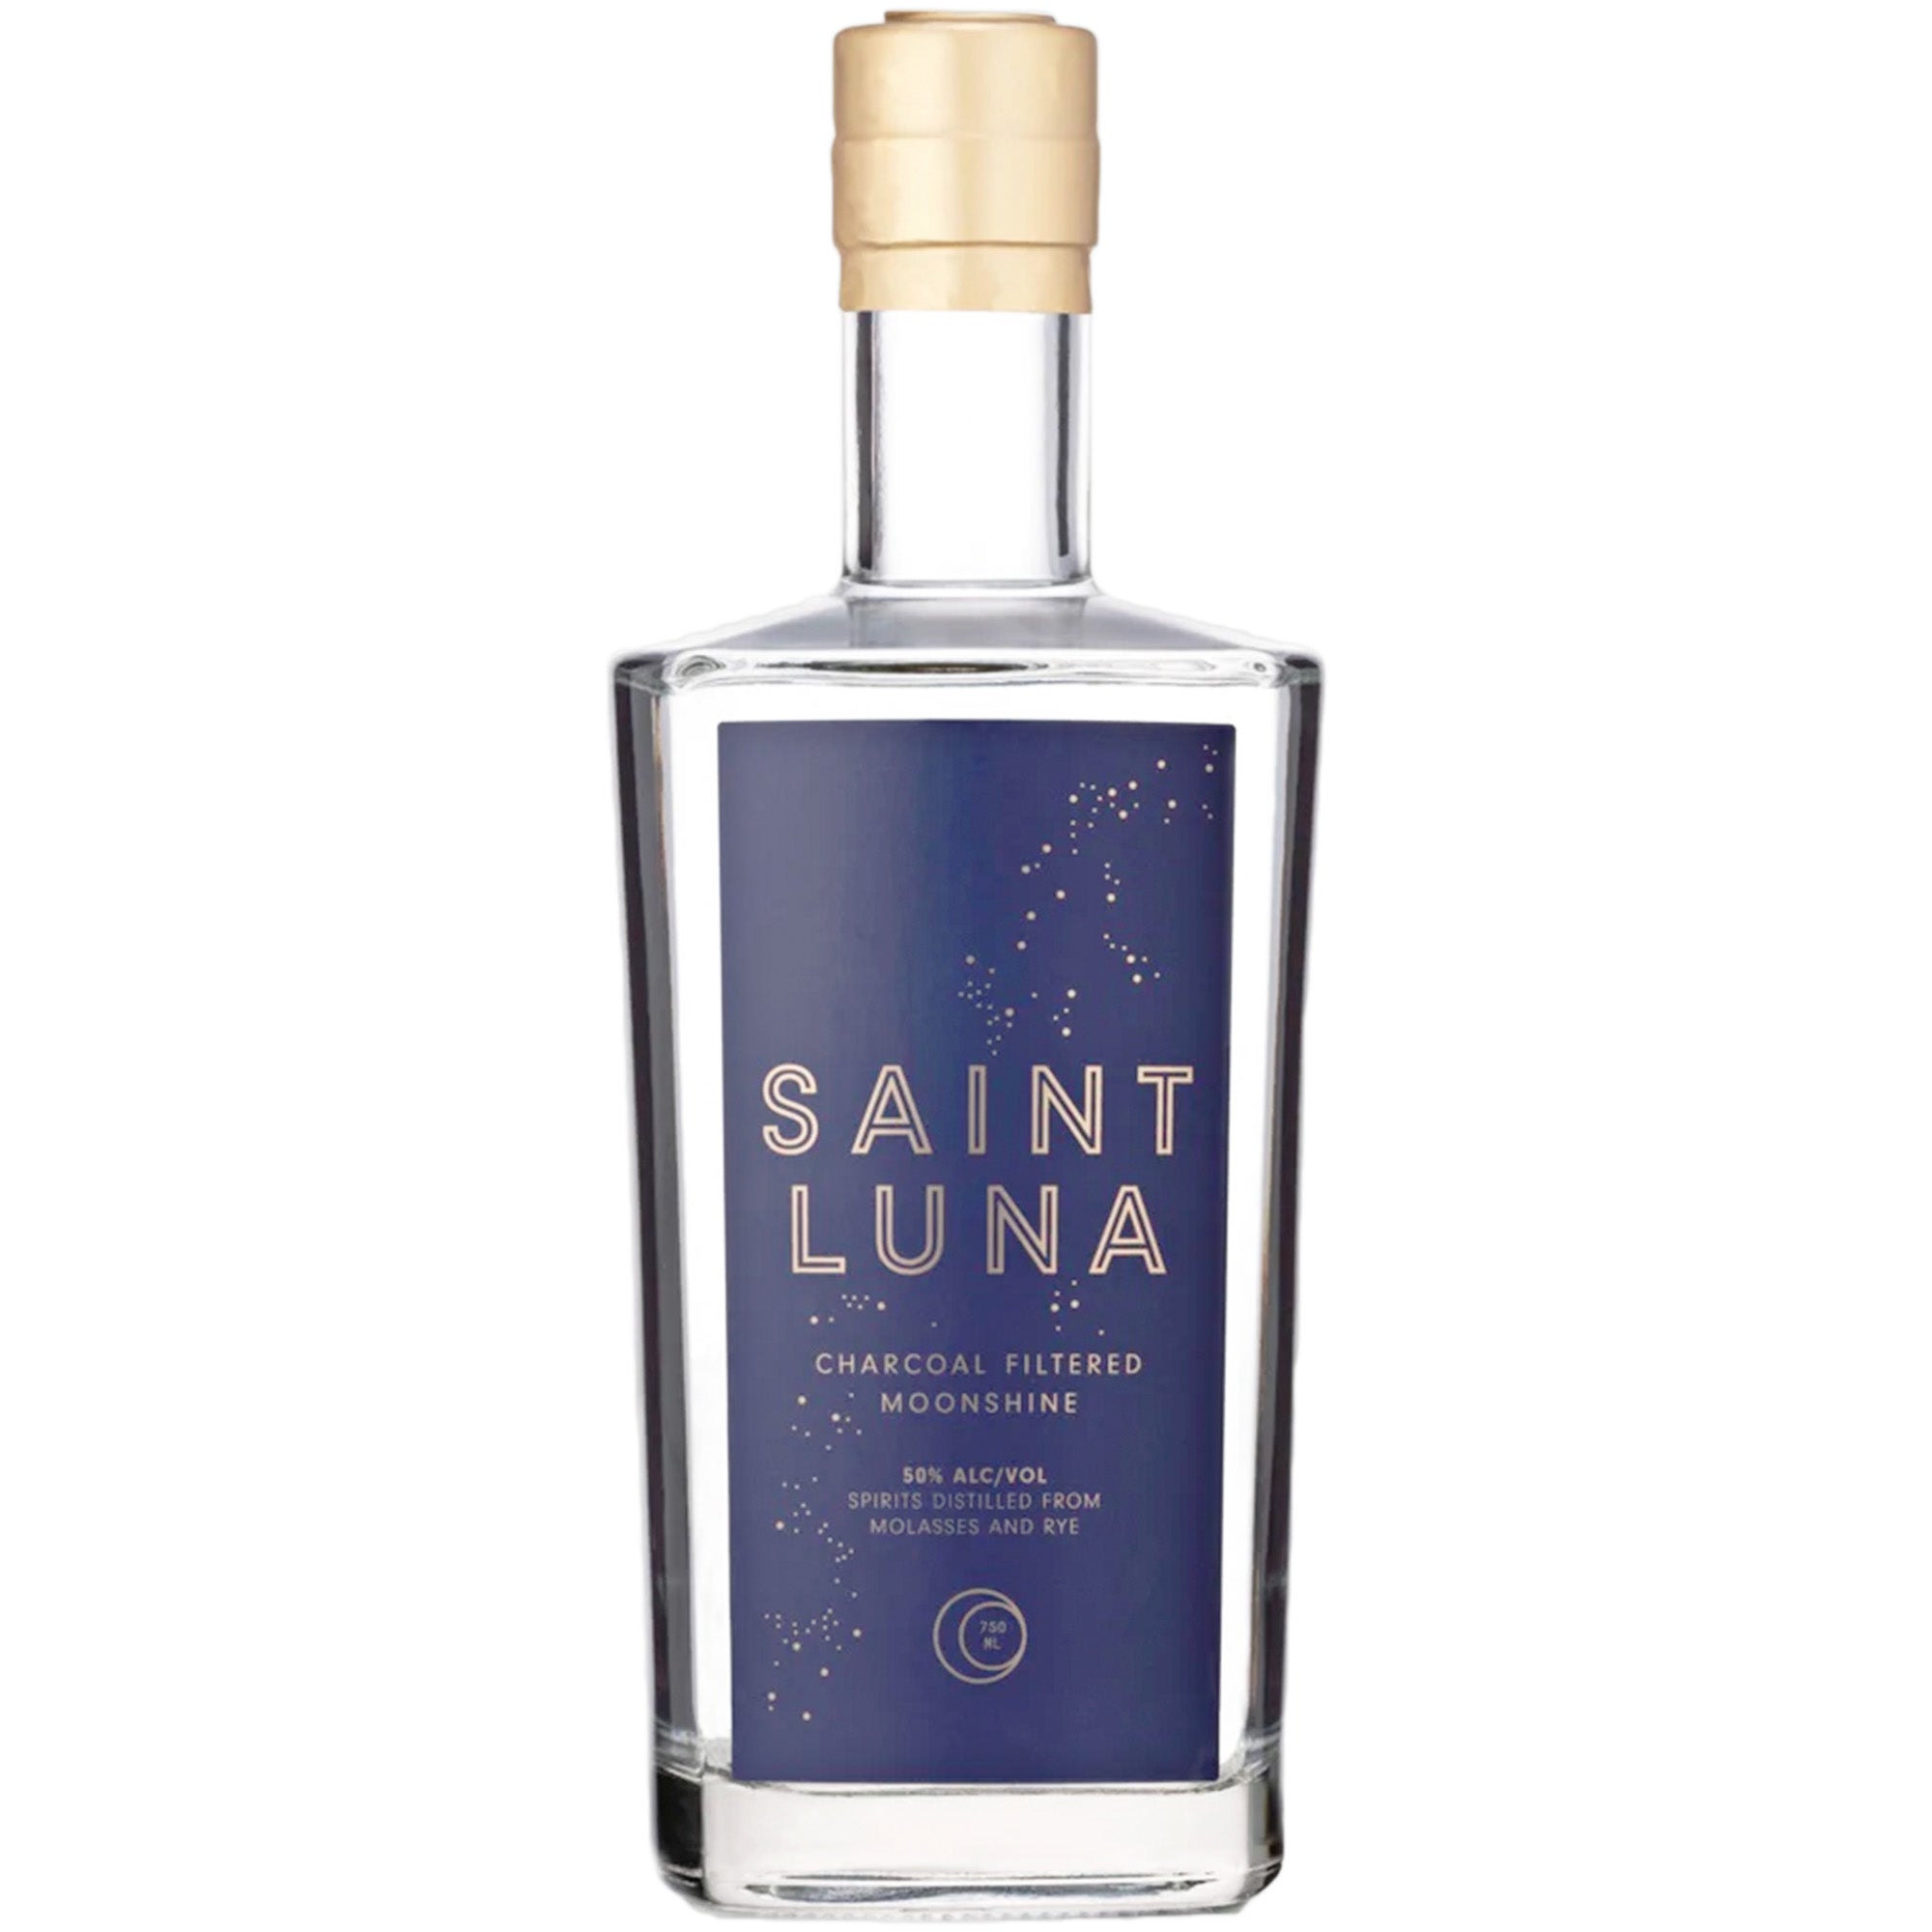 Saint Luna Charcoal Filtered Moonshine